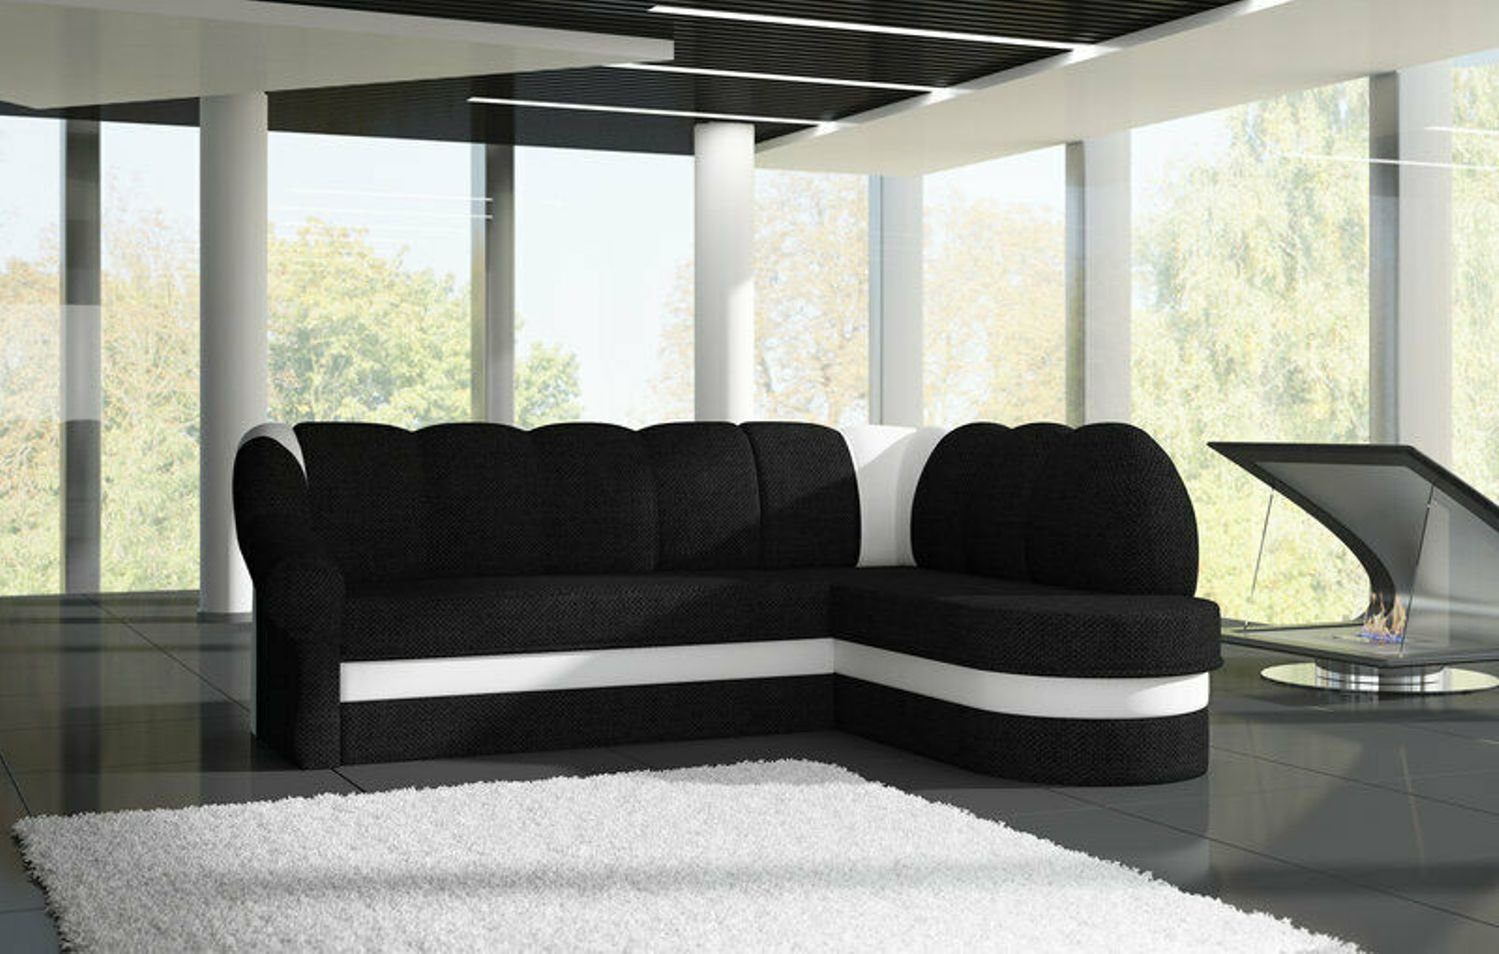 JVmoebel Ecksofa Designer Rotes Ecksofa Luxus Couch Modernes Textil Polster Sofa, Made in Europe Schwarz/Weiß